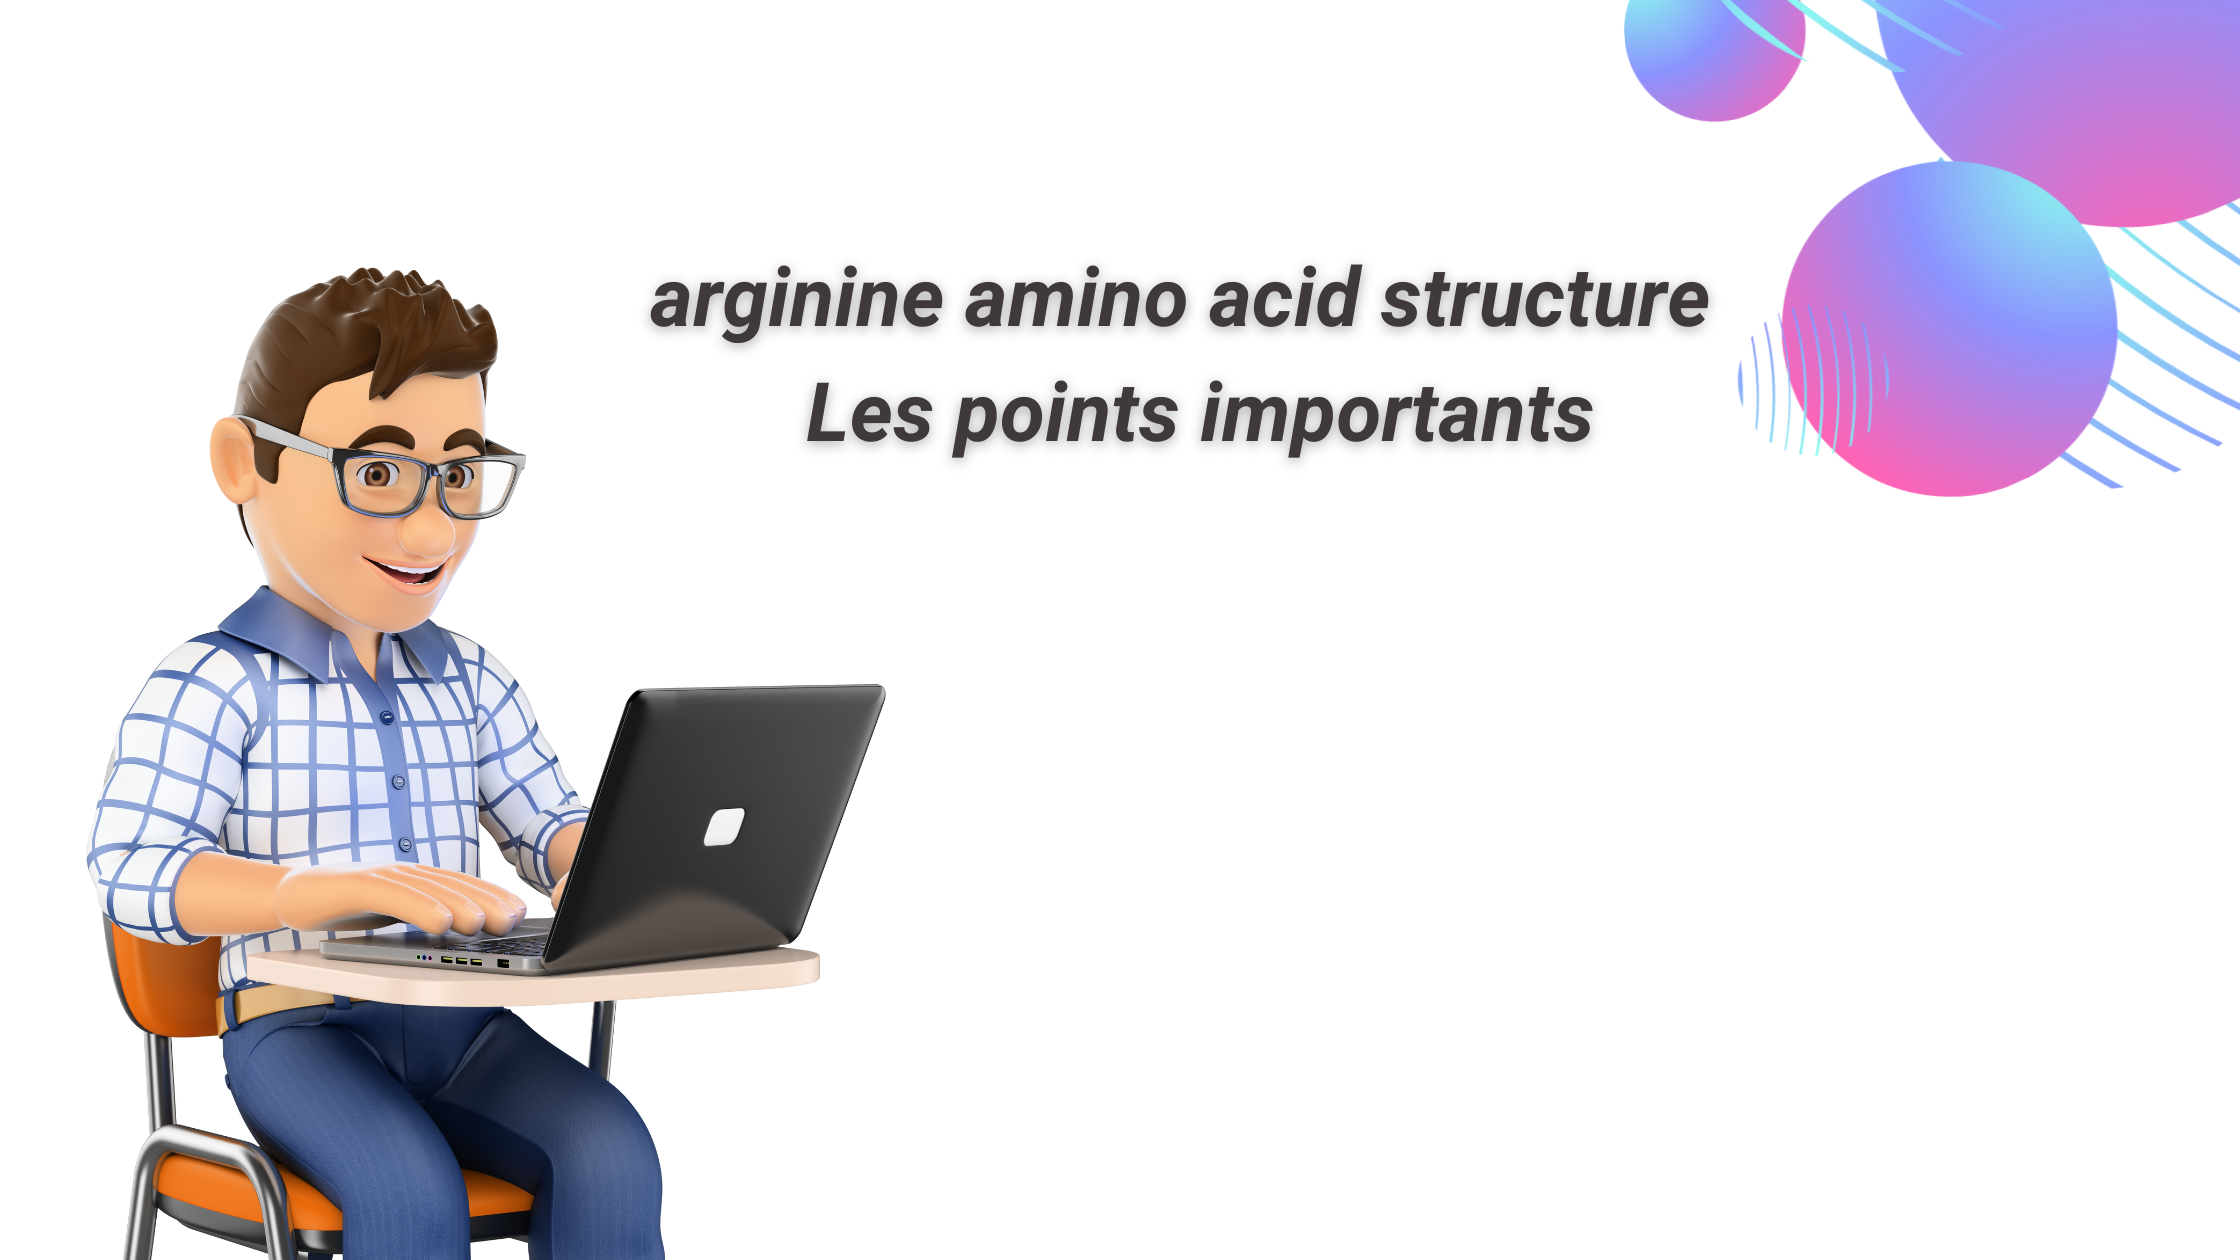 arginine amino acid structure | Les points importants